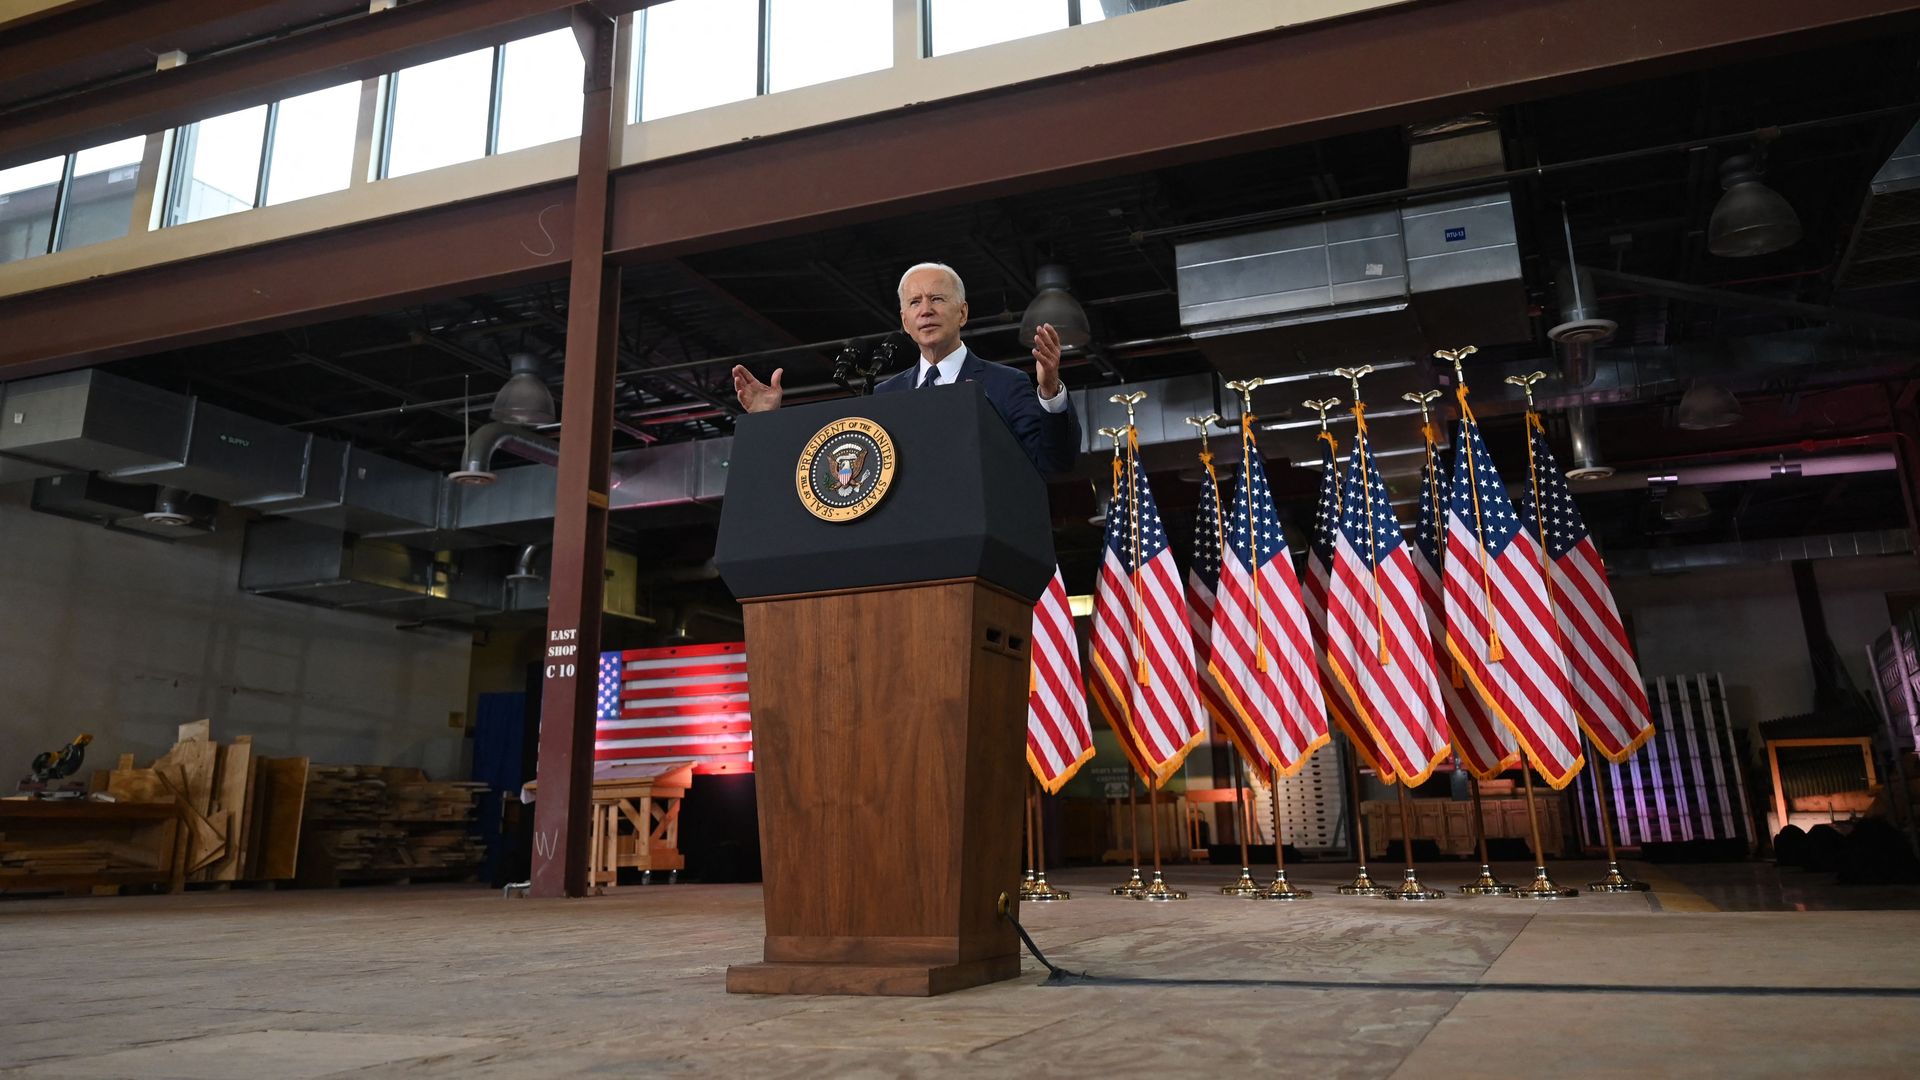 Biden speaks in front of flags.